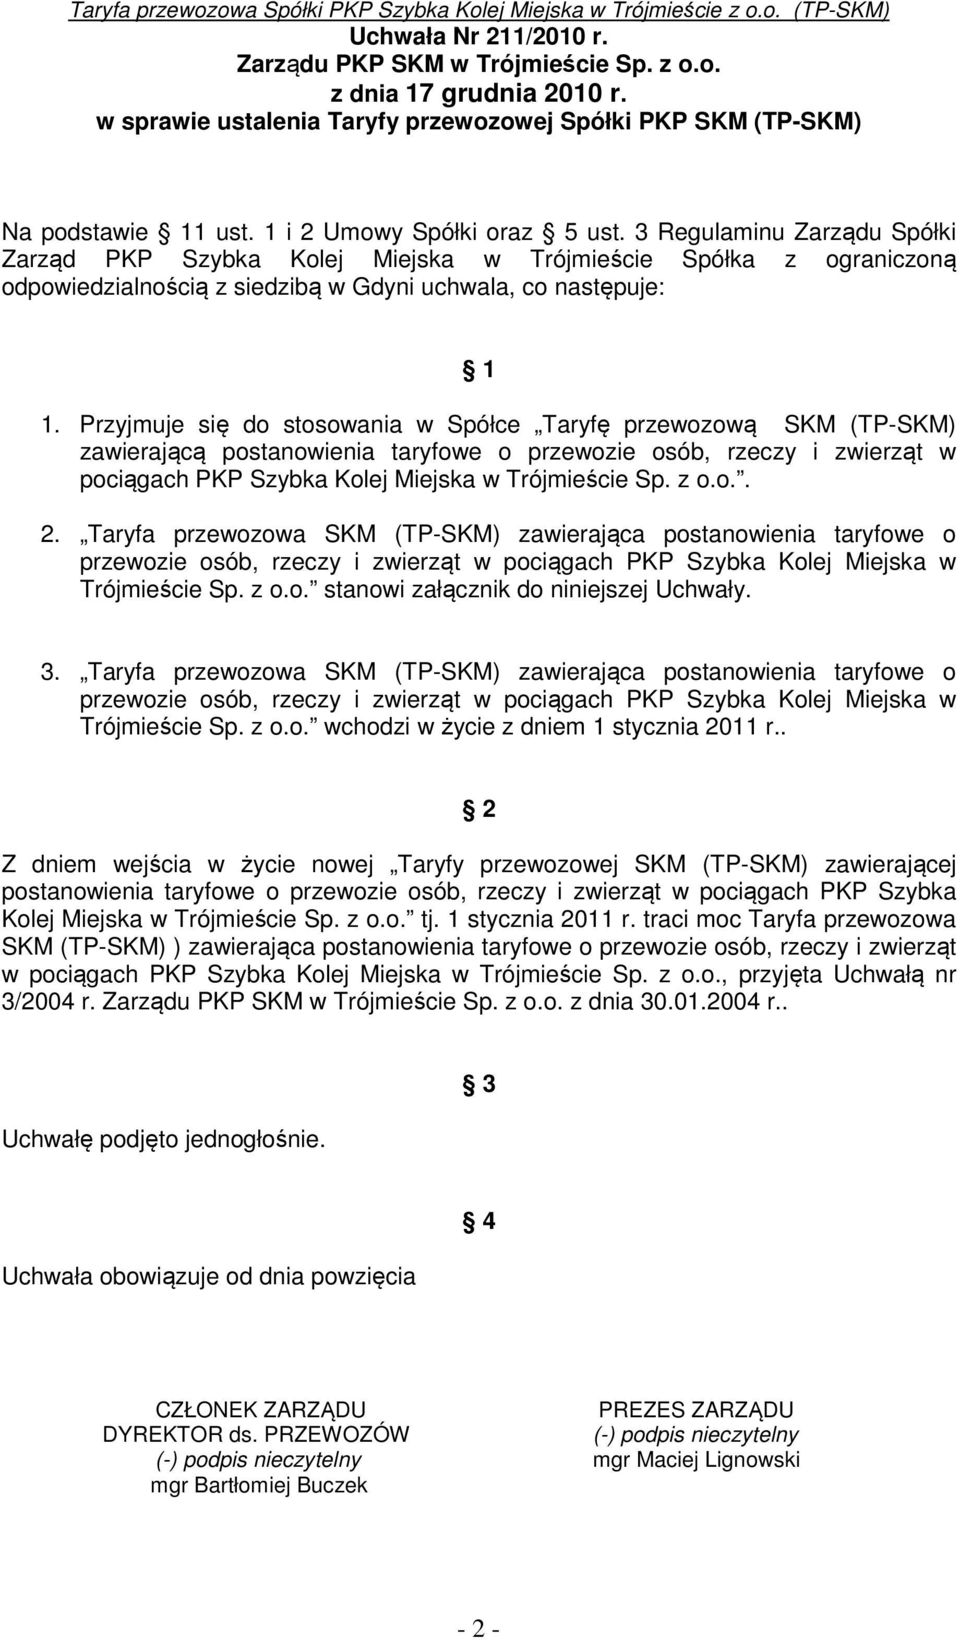 Przyjmuje się do stosowania w Spółce Taryfę przewozową SKM (TP-SKM) zawierającą postanowienia taryfowe o przewozie osób, rzeczy i zwierząt w pociągach PKP Szybka Kolej Miejska w Trójmieście Sp. z o.o.. 2.